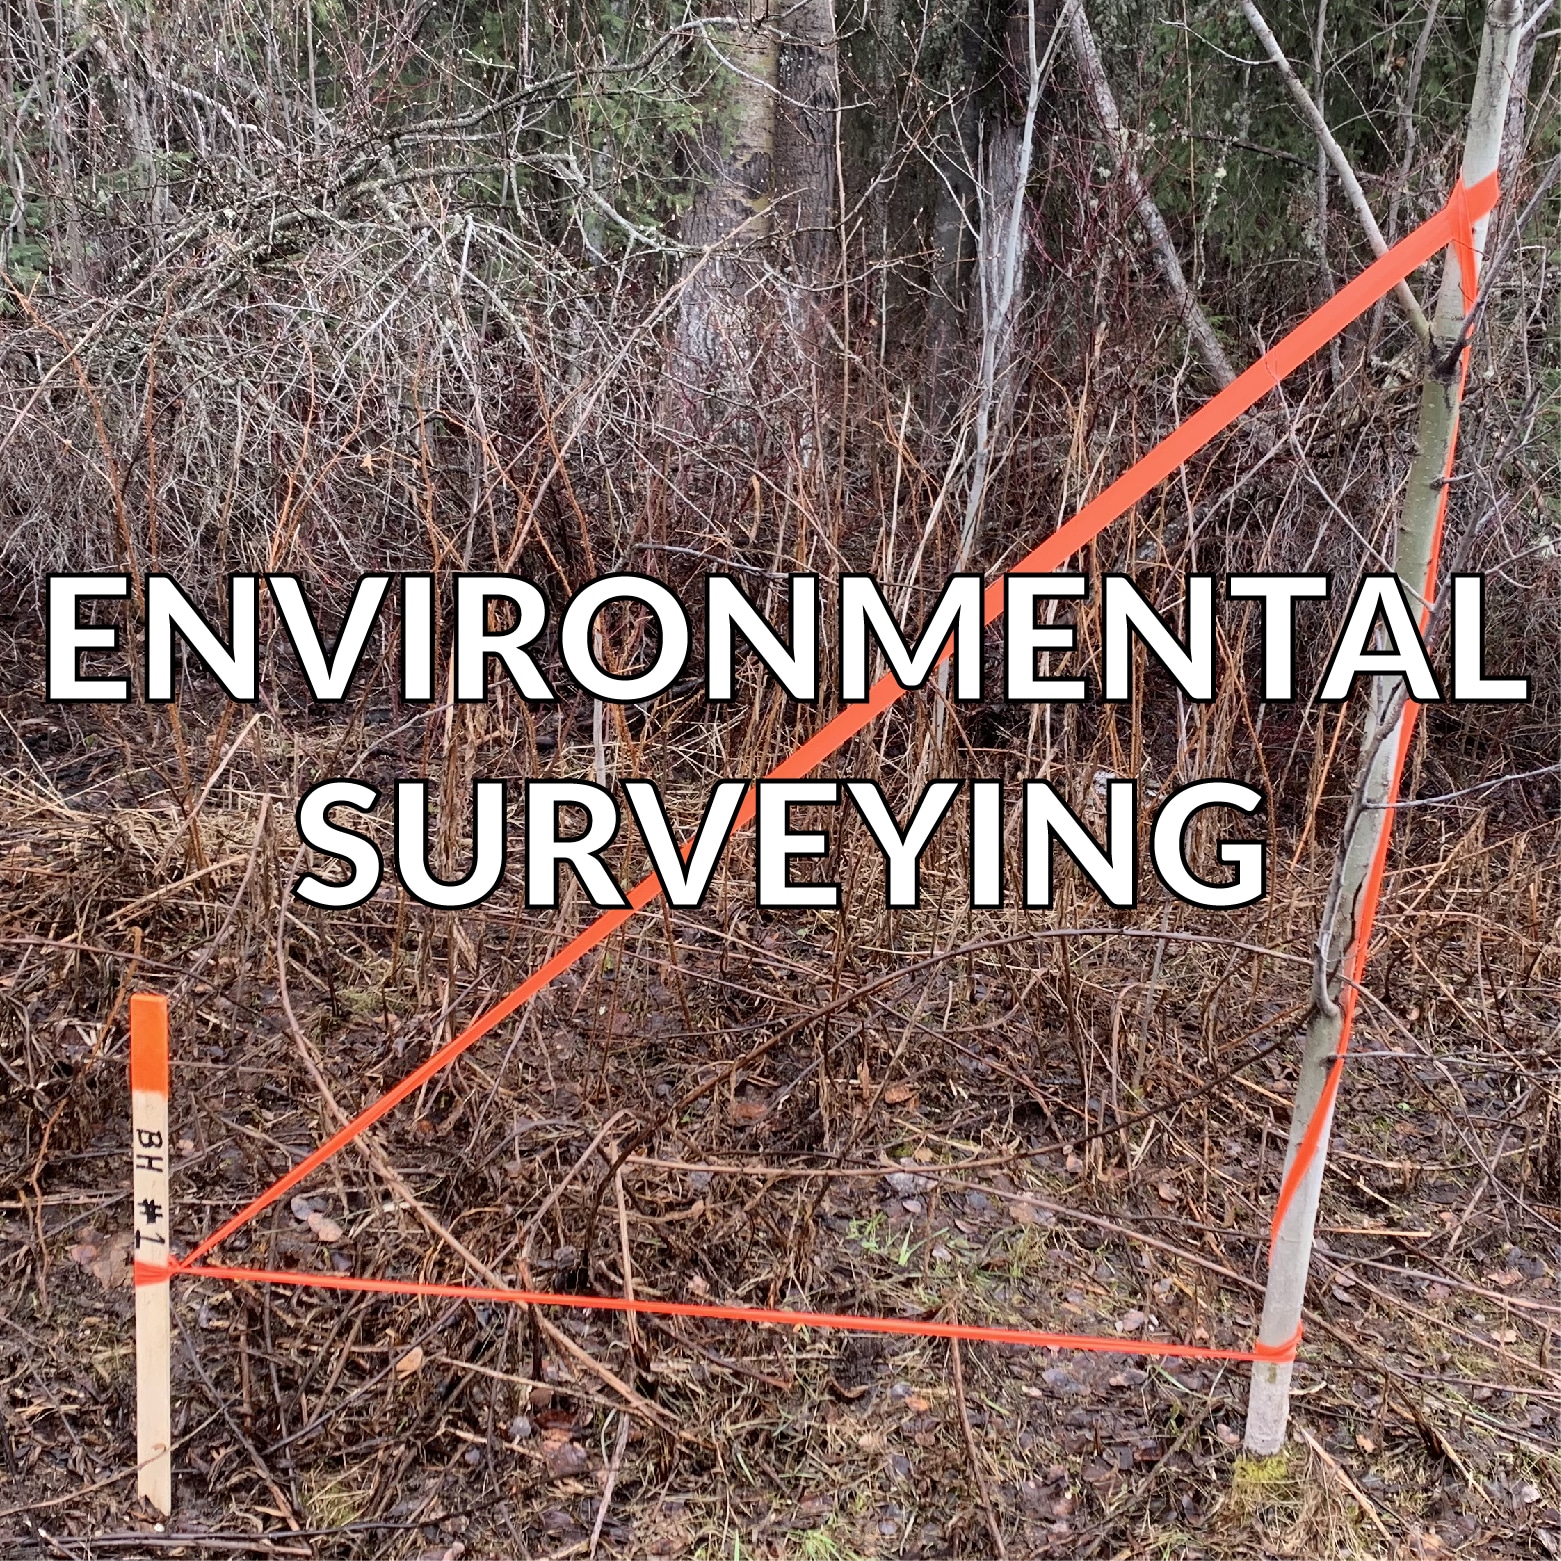 environmental surveying services alberta bc and yukon